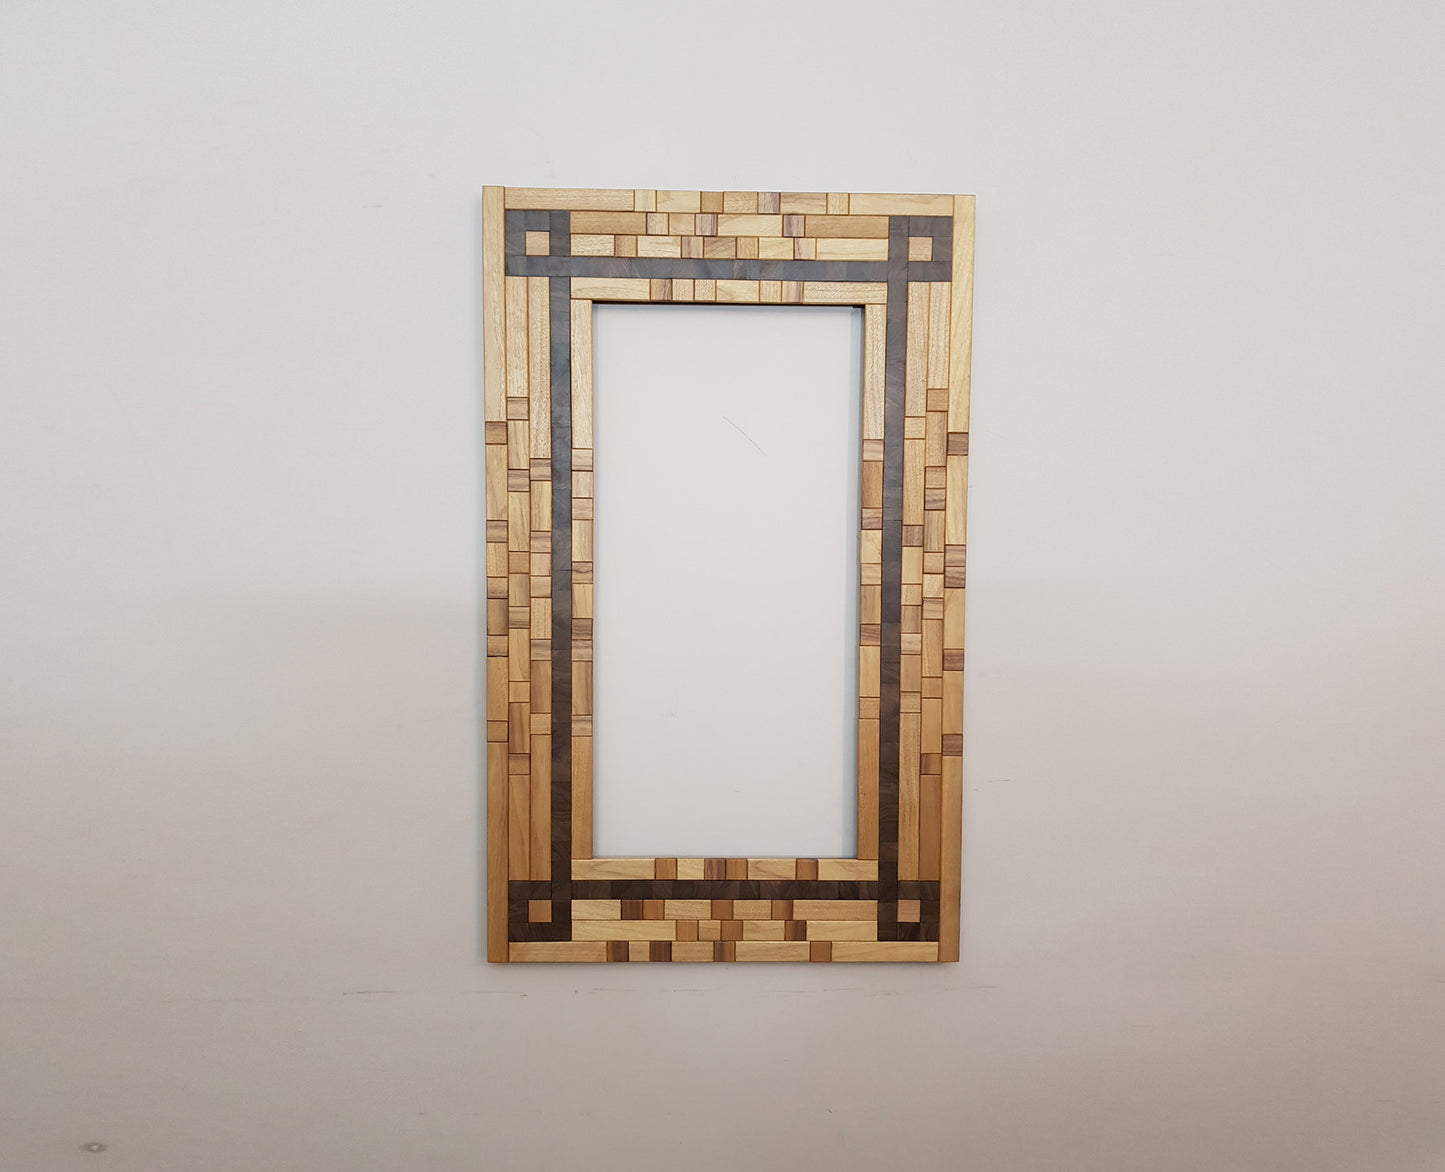 Large centrepiece statement mirror in walnut, picture frame artwork